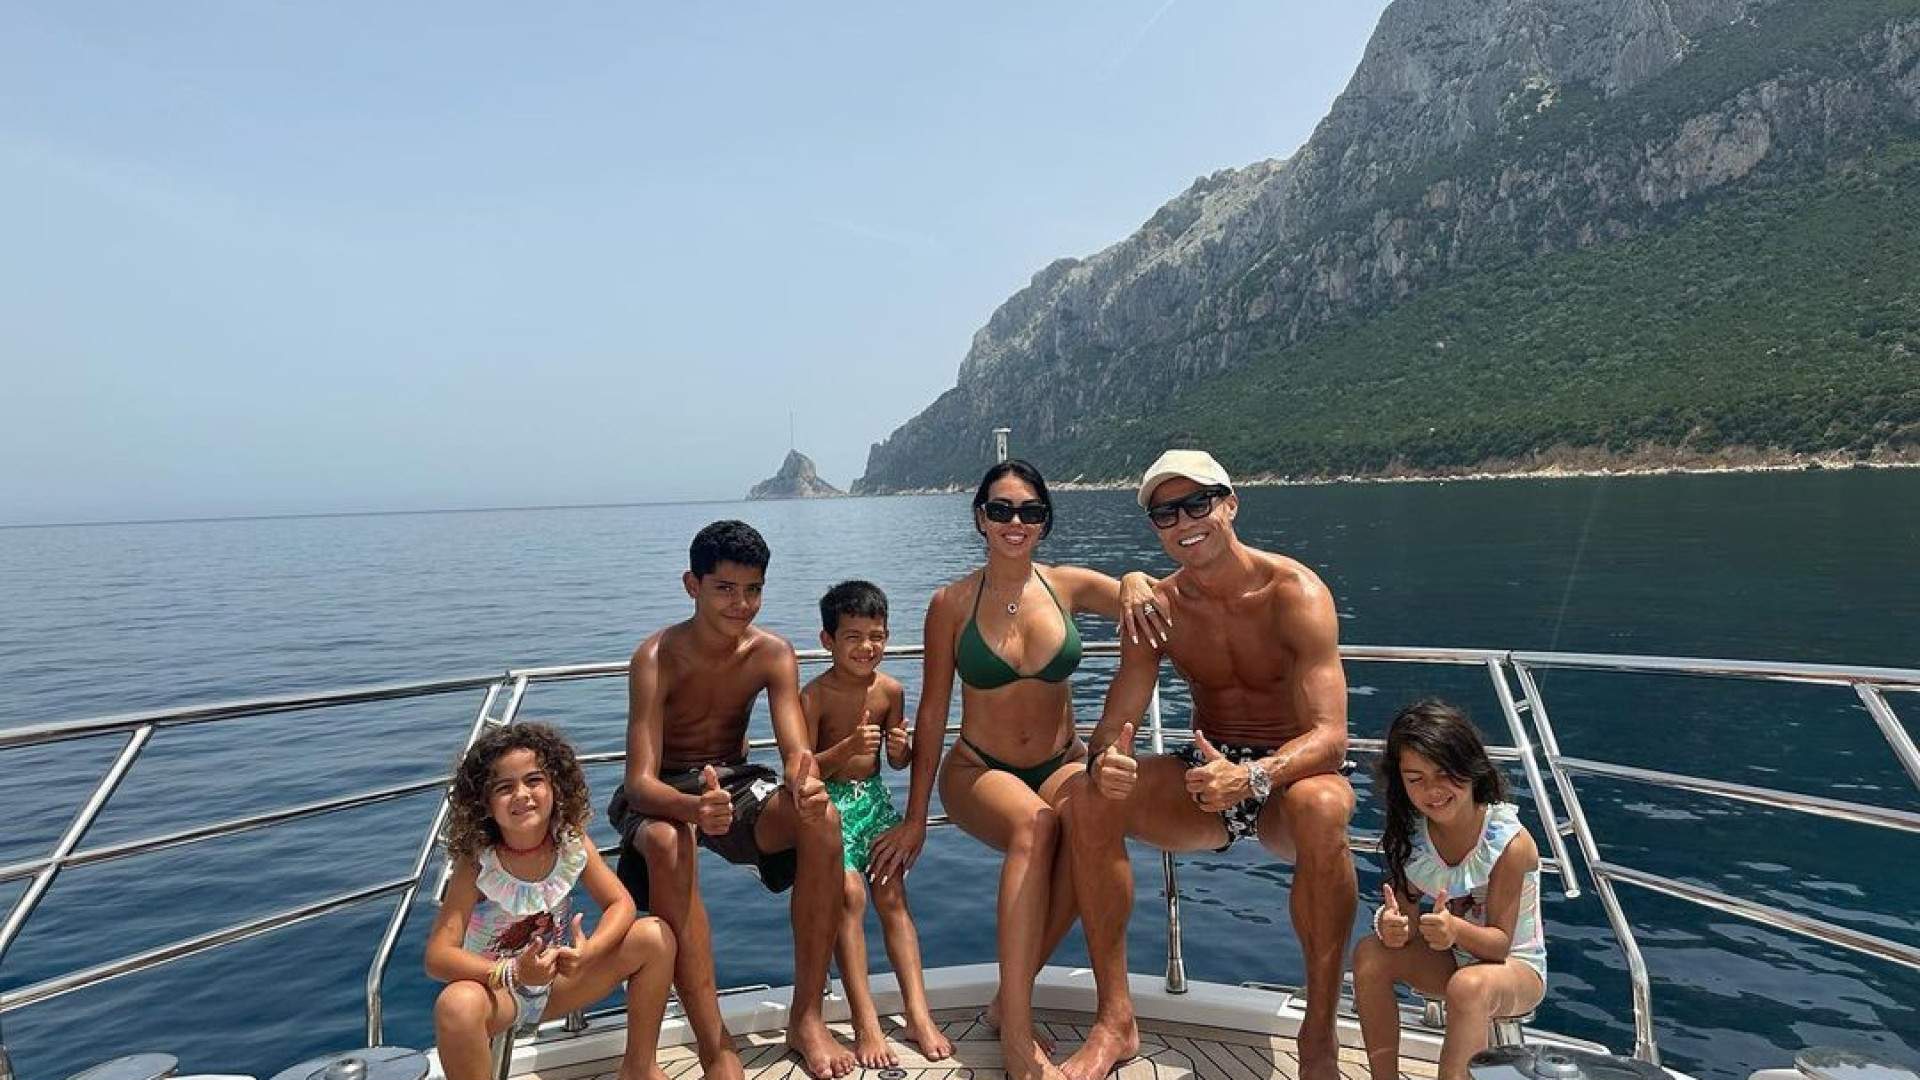 Cristiano Ronaldo sopra 39 velinhas, veja fotos encantadoras em família